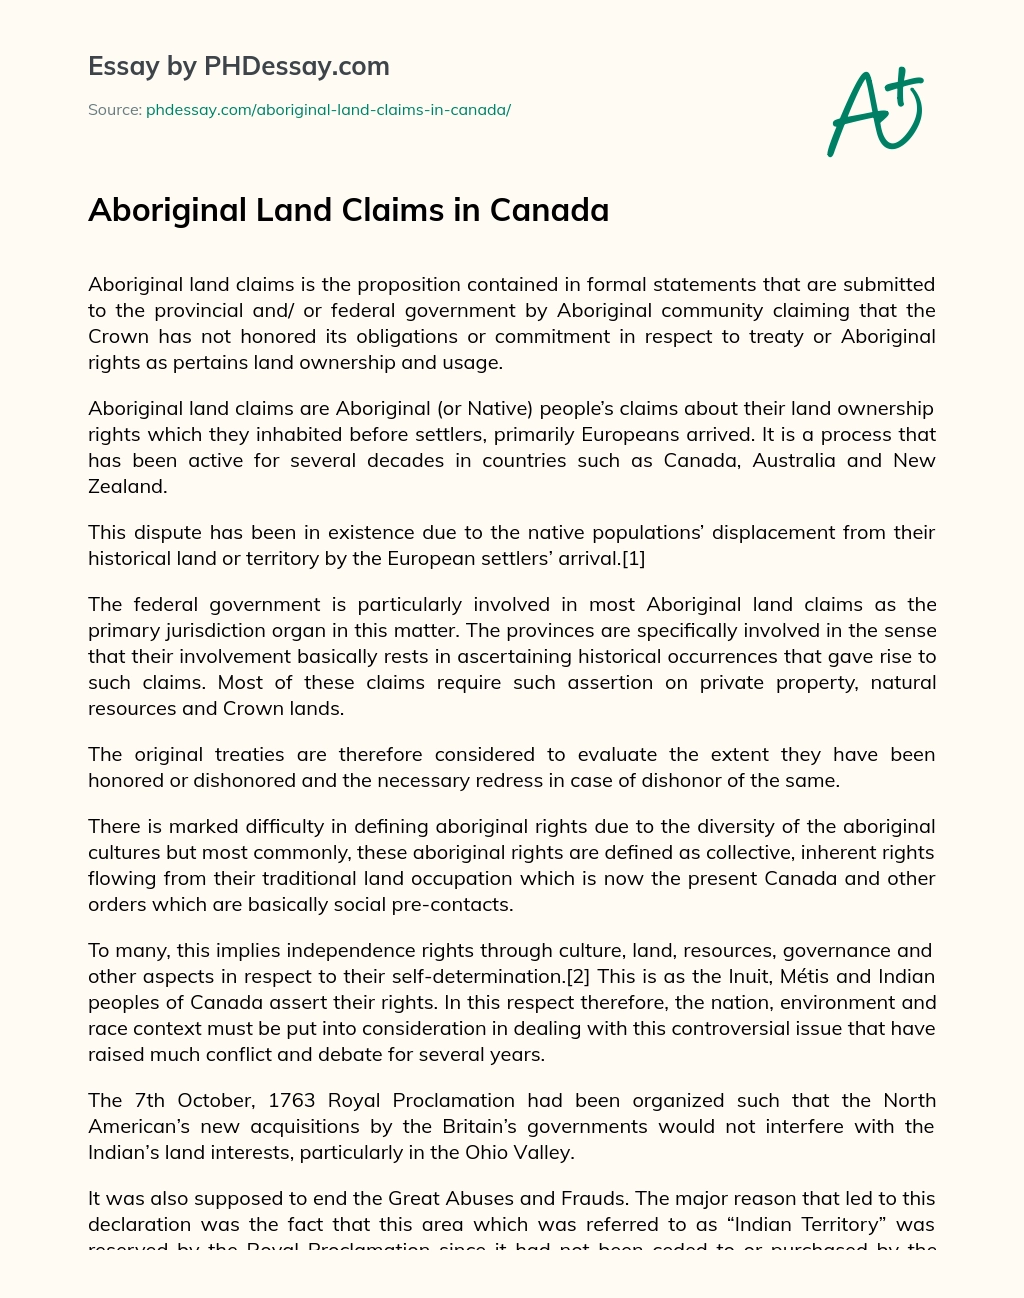 Aboriginal Land Claims in Canada essay